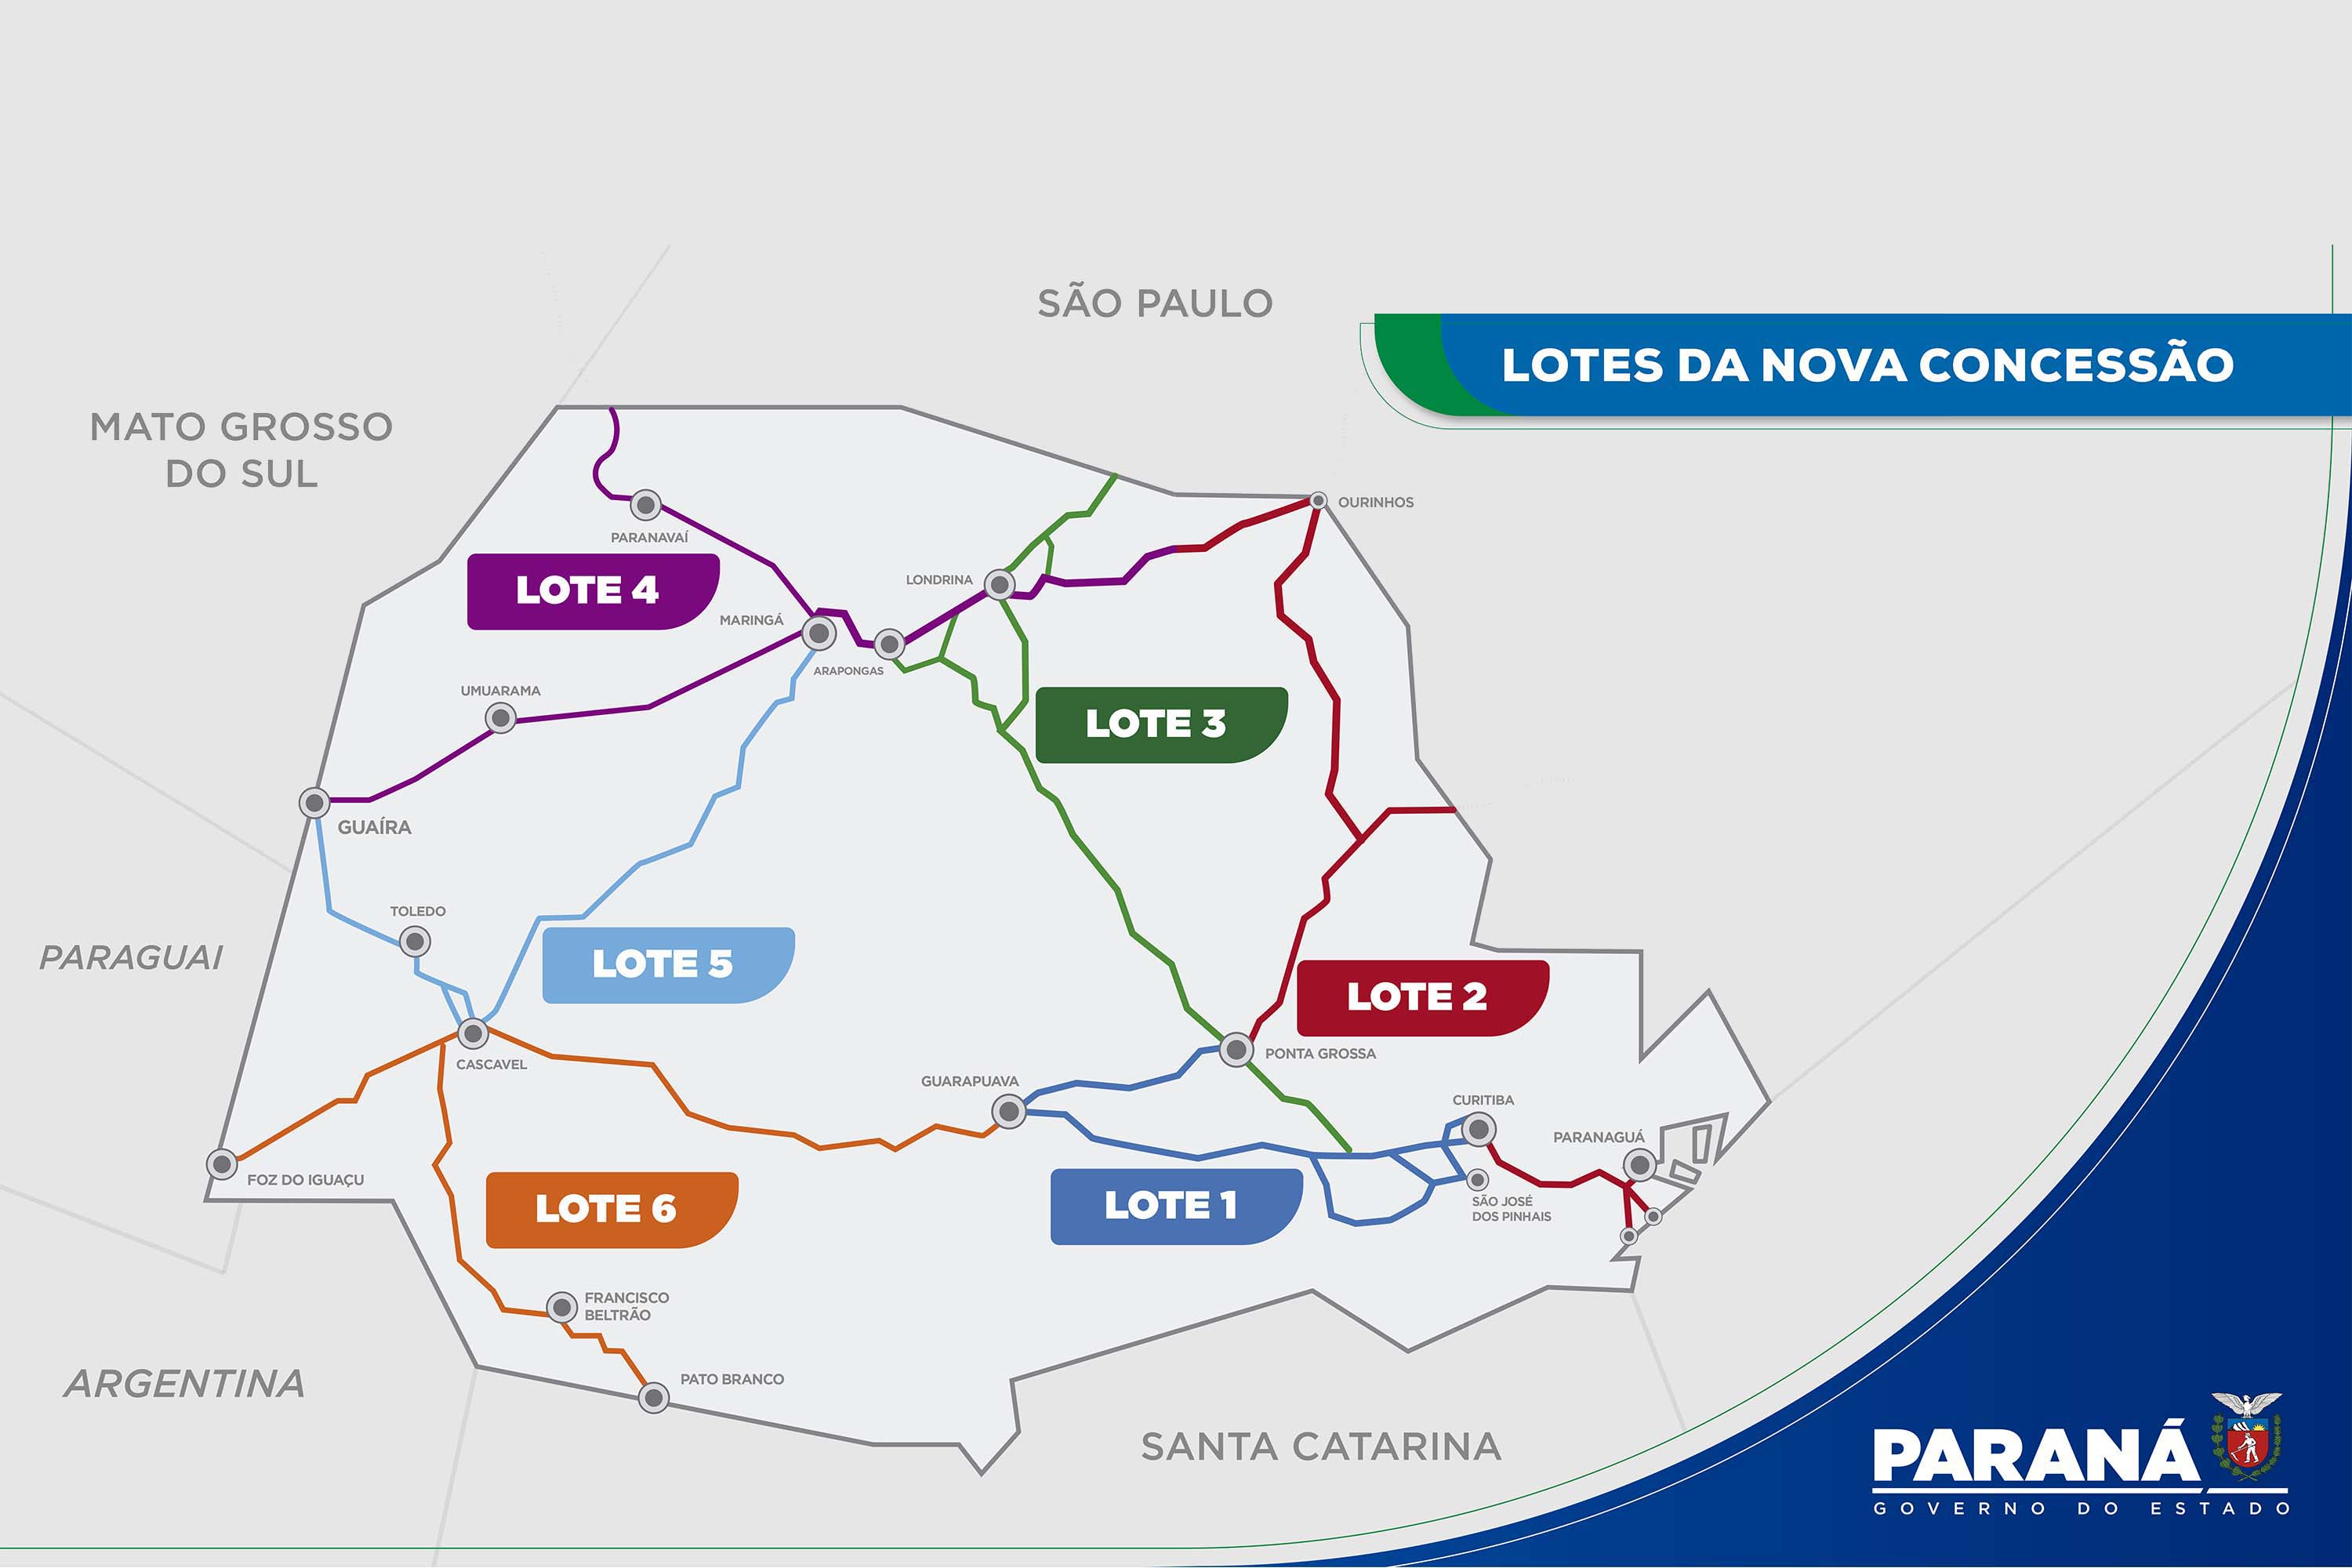 Mapa do estado do Paraná divide em lotes da nova concessão